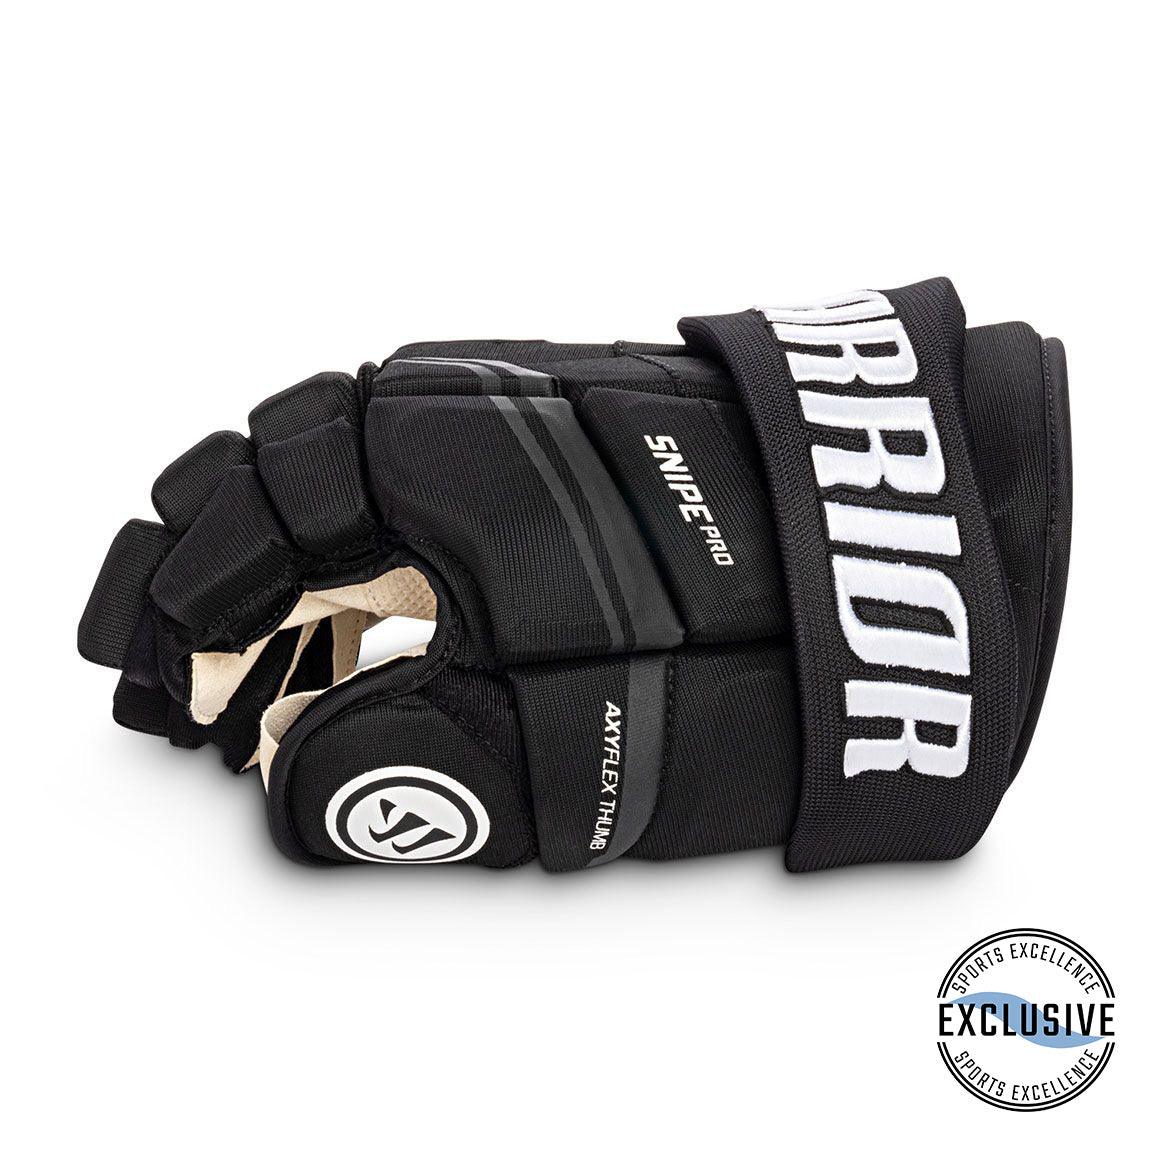 Snipe Pro Hockey Gloves